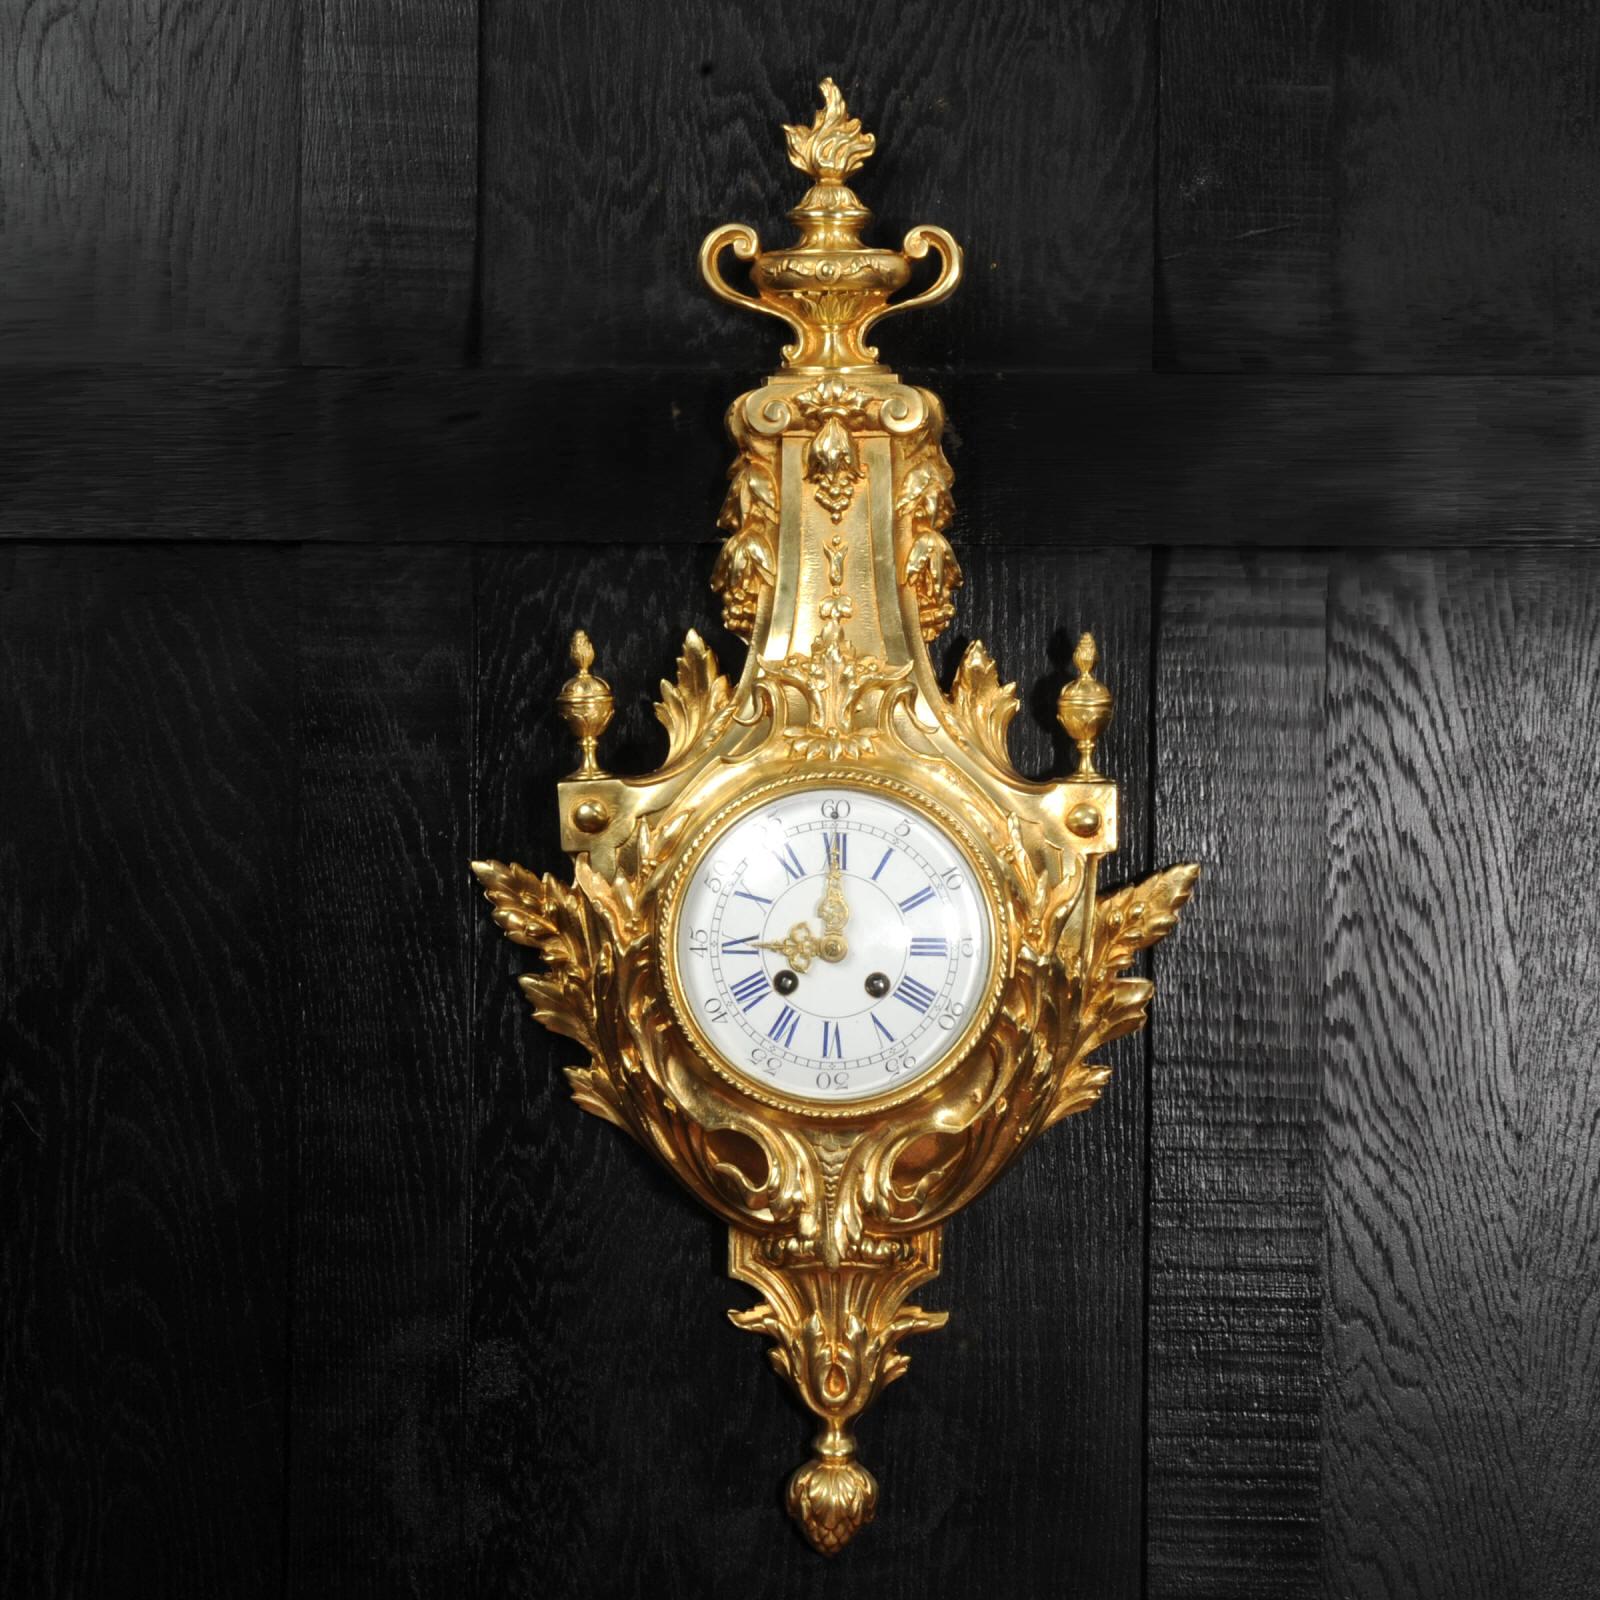 Une grande et impressionnante horloge murale ancienne de cartel français par A. D. Mougin. Magnifiquement modelé dans le style classique de Louis XVI, en bronze doré. Bouclier en forme d'acanthe enveloppant de bas en haut une urne enflammée.

Le